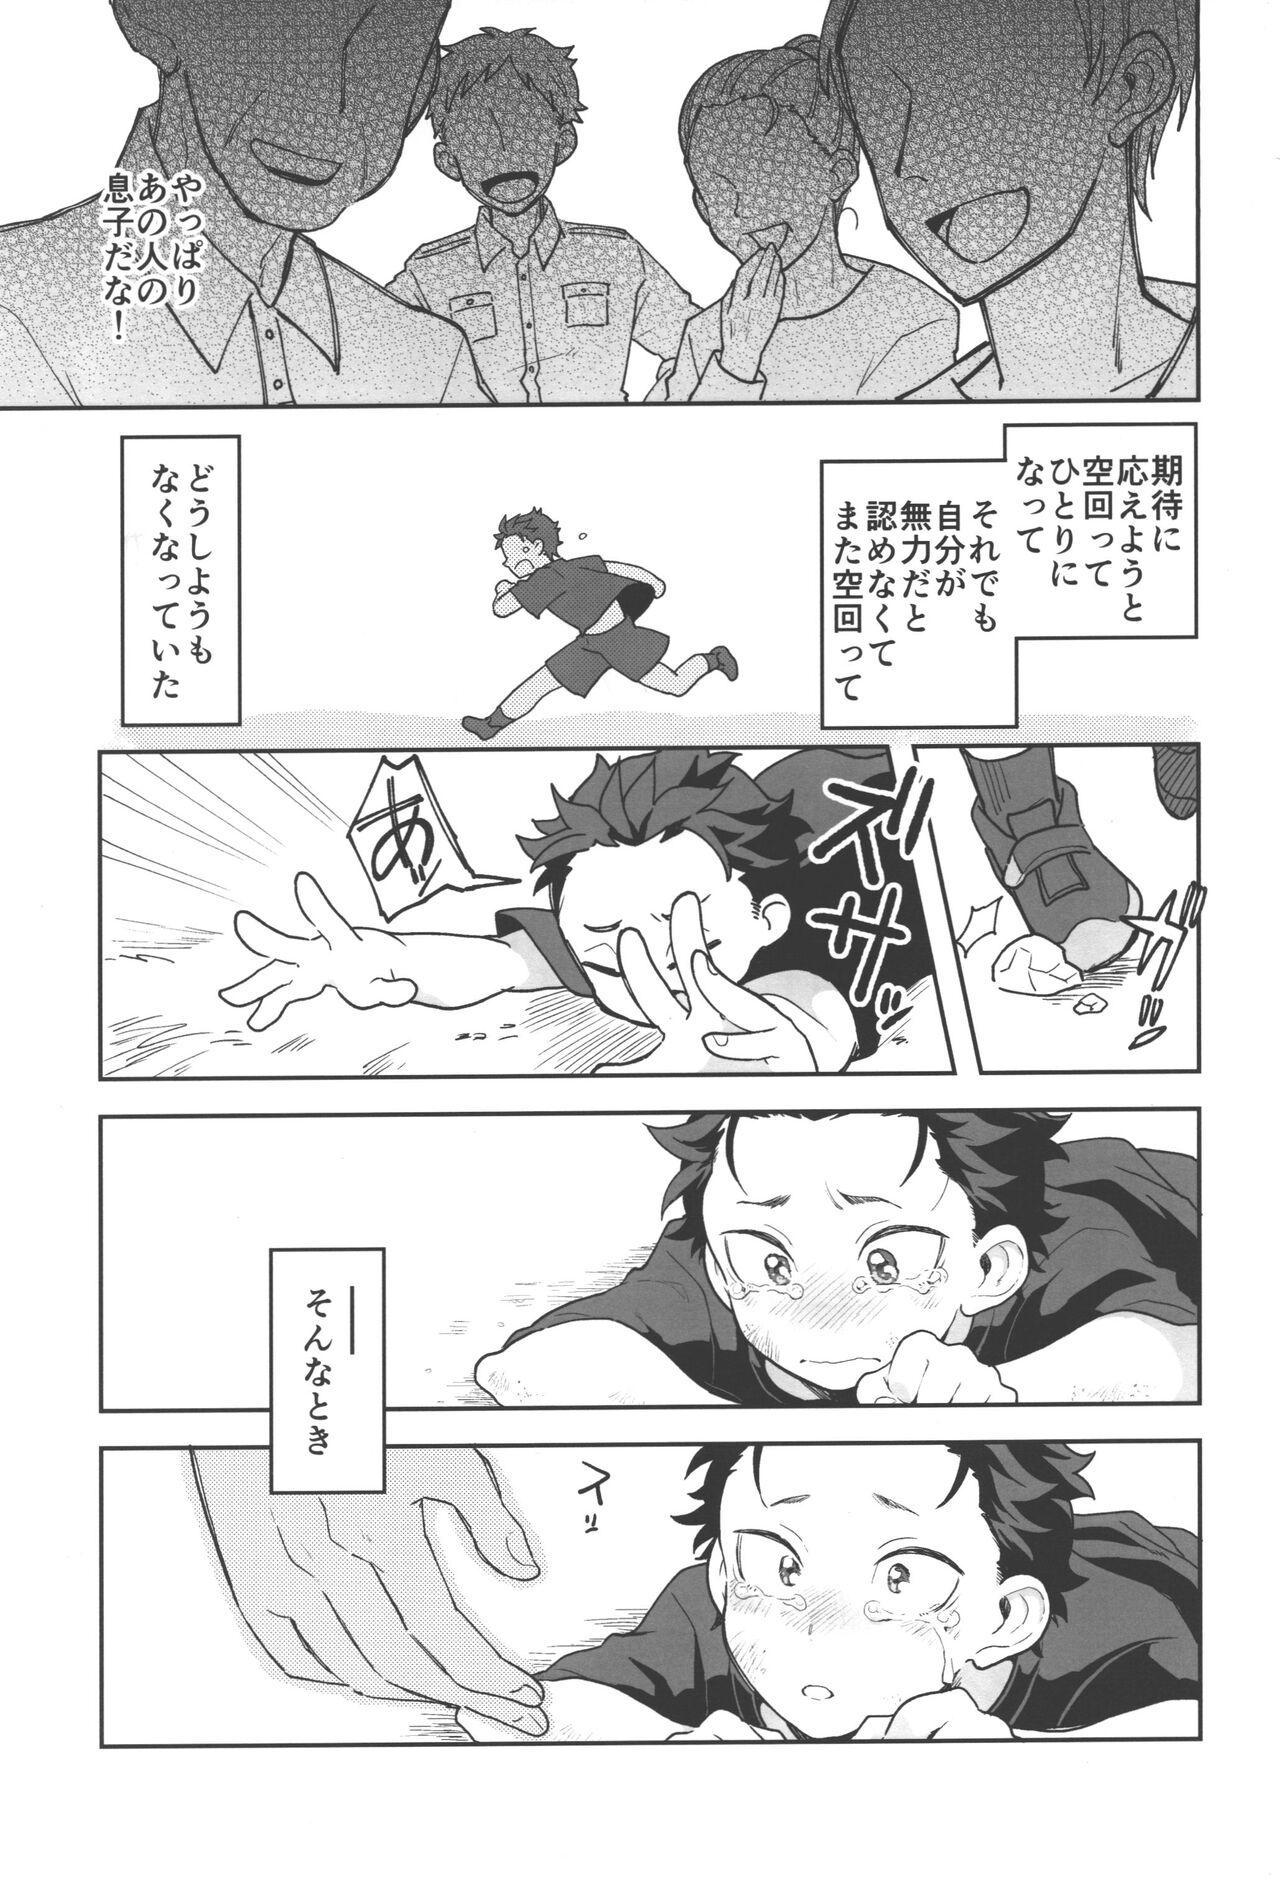 Consolo Julius Nii-chan to Issho - Re zero kara hajimeru isekai seikatsu Good - Page 2